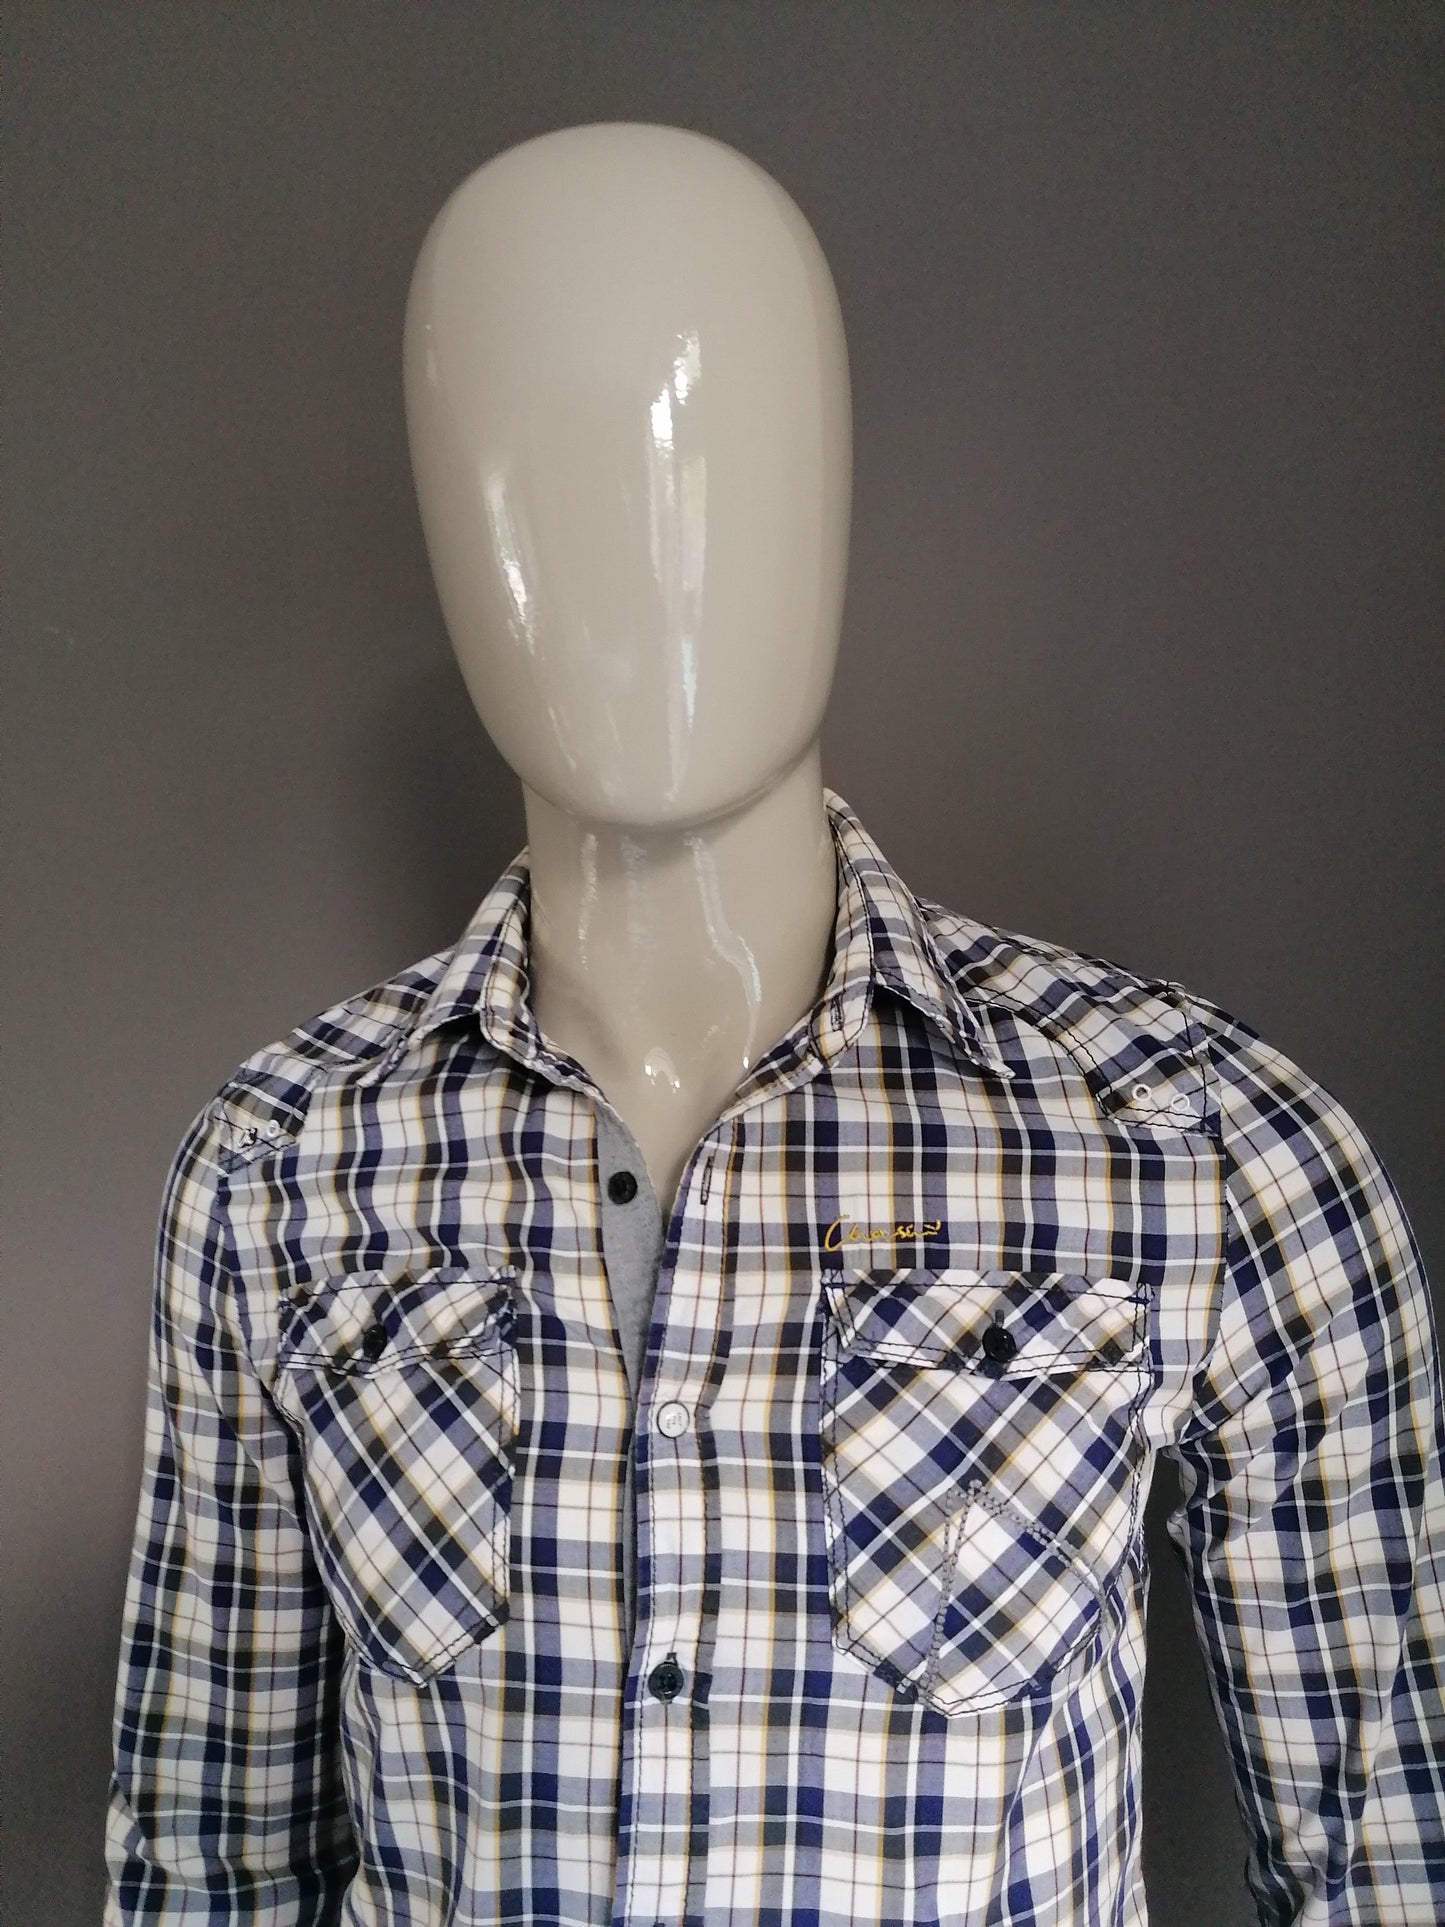 B keus: Chasin overhemd. Paars Wit Geel. Maat M / S. gaatje - EcoGents